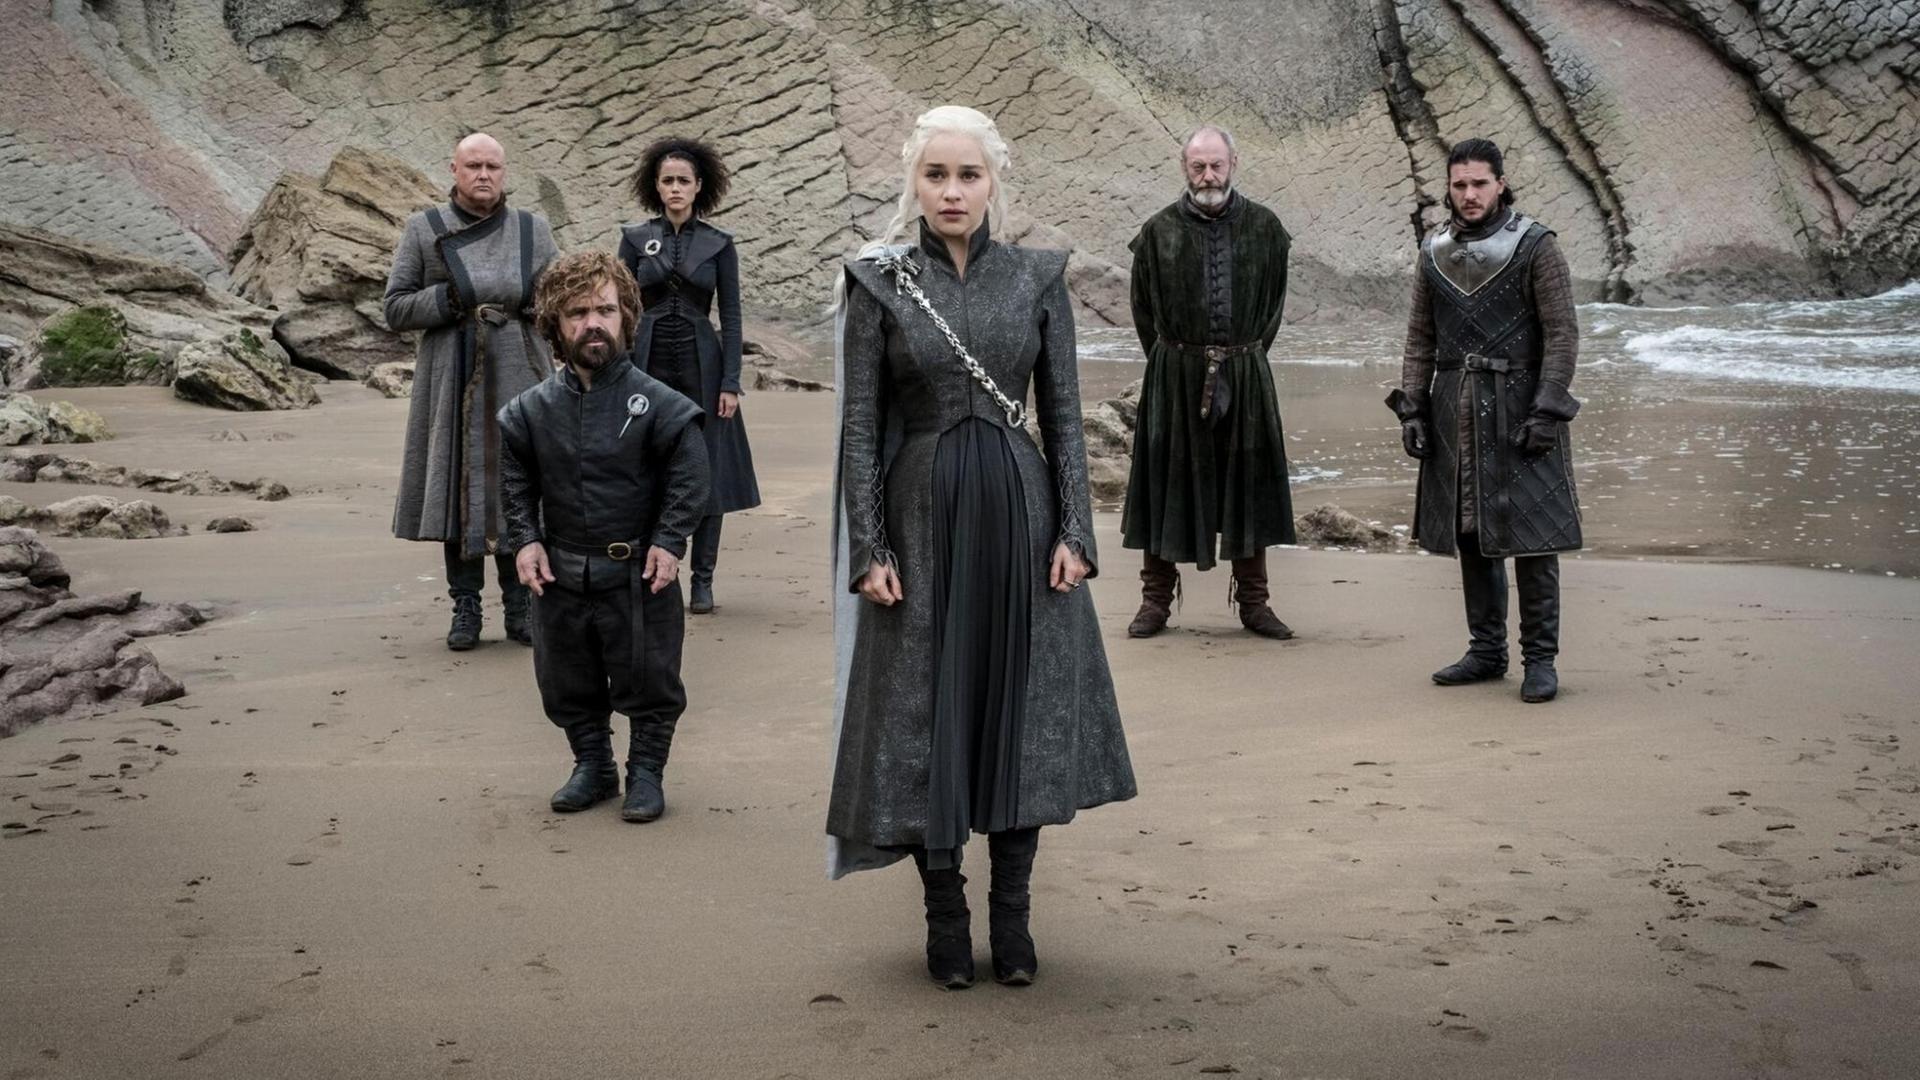 Sechs Charaktere aus "Game of Thrones" stehen am Strand und schauen ernst